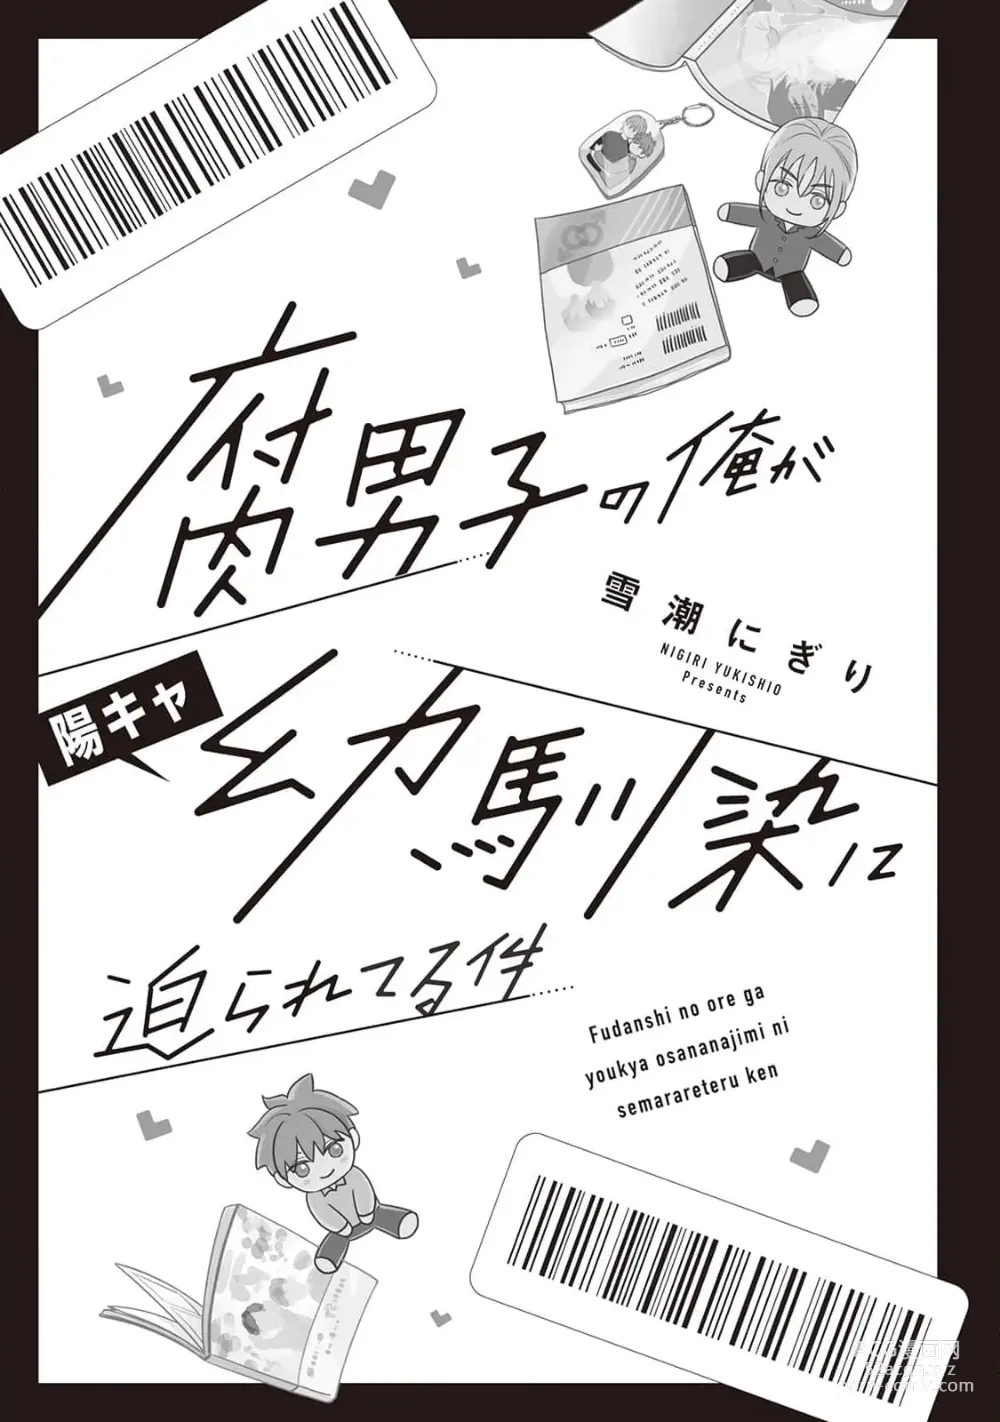 Page 3 of manga Fudanshi no Ore ga Youkya Osananajimi ni Semarareteru Ken